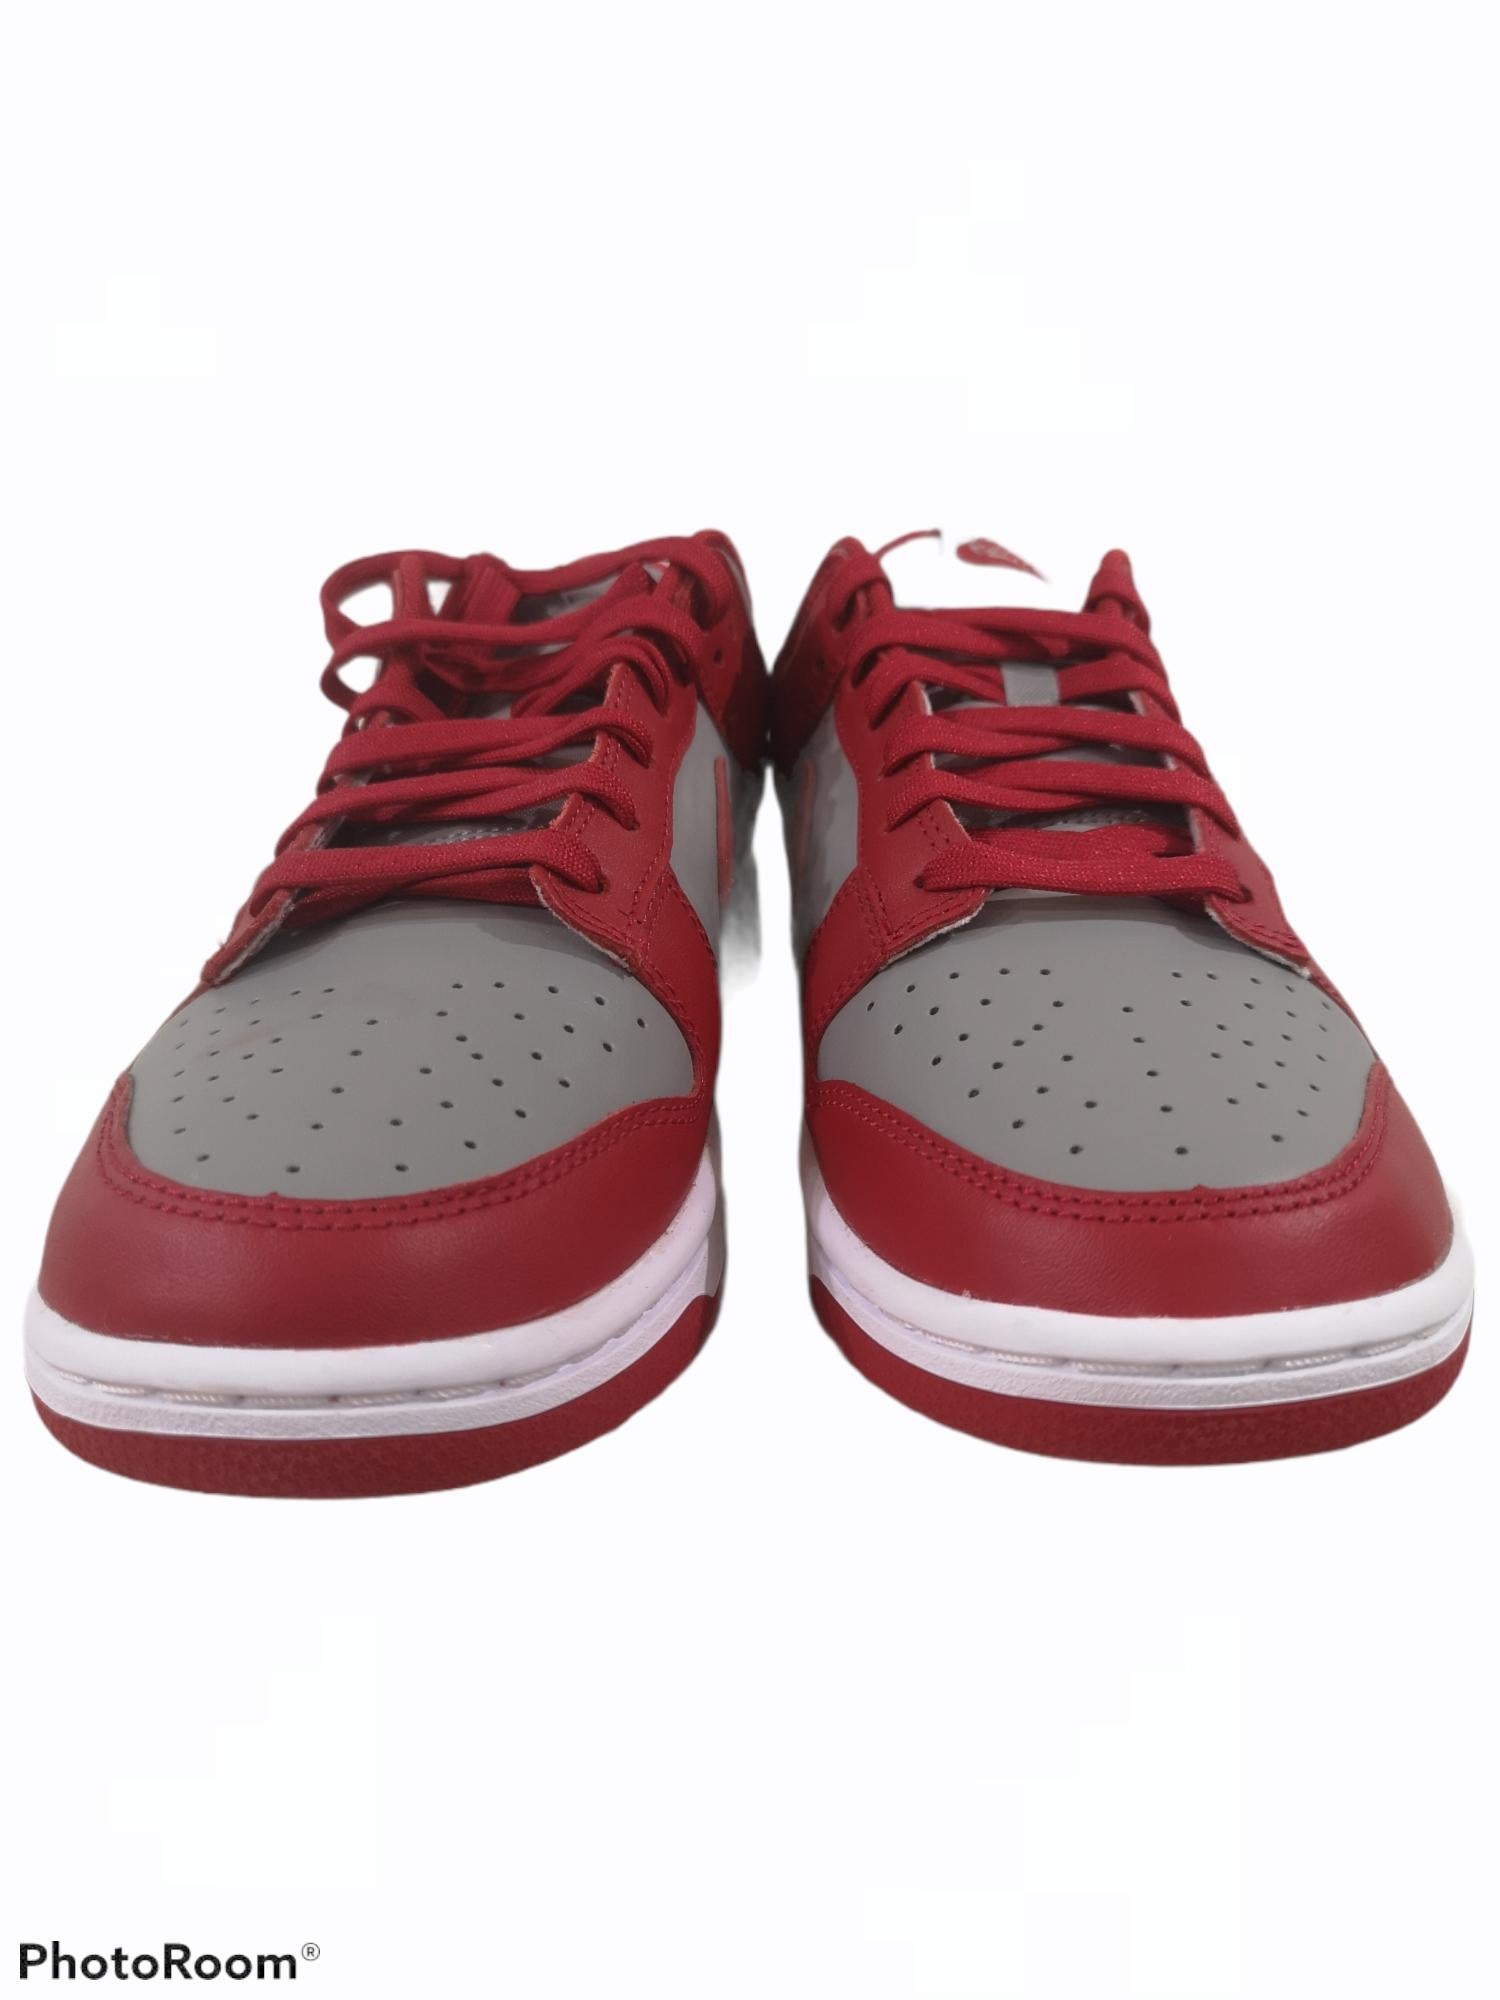 Air Jordan low red grey
size 42/